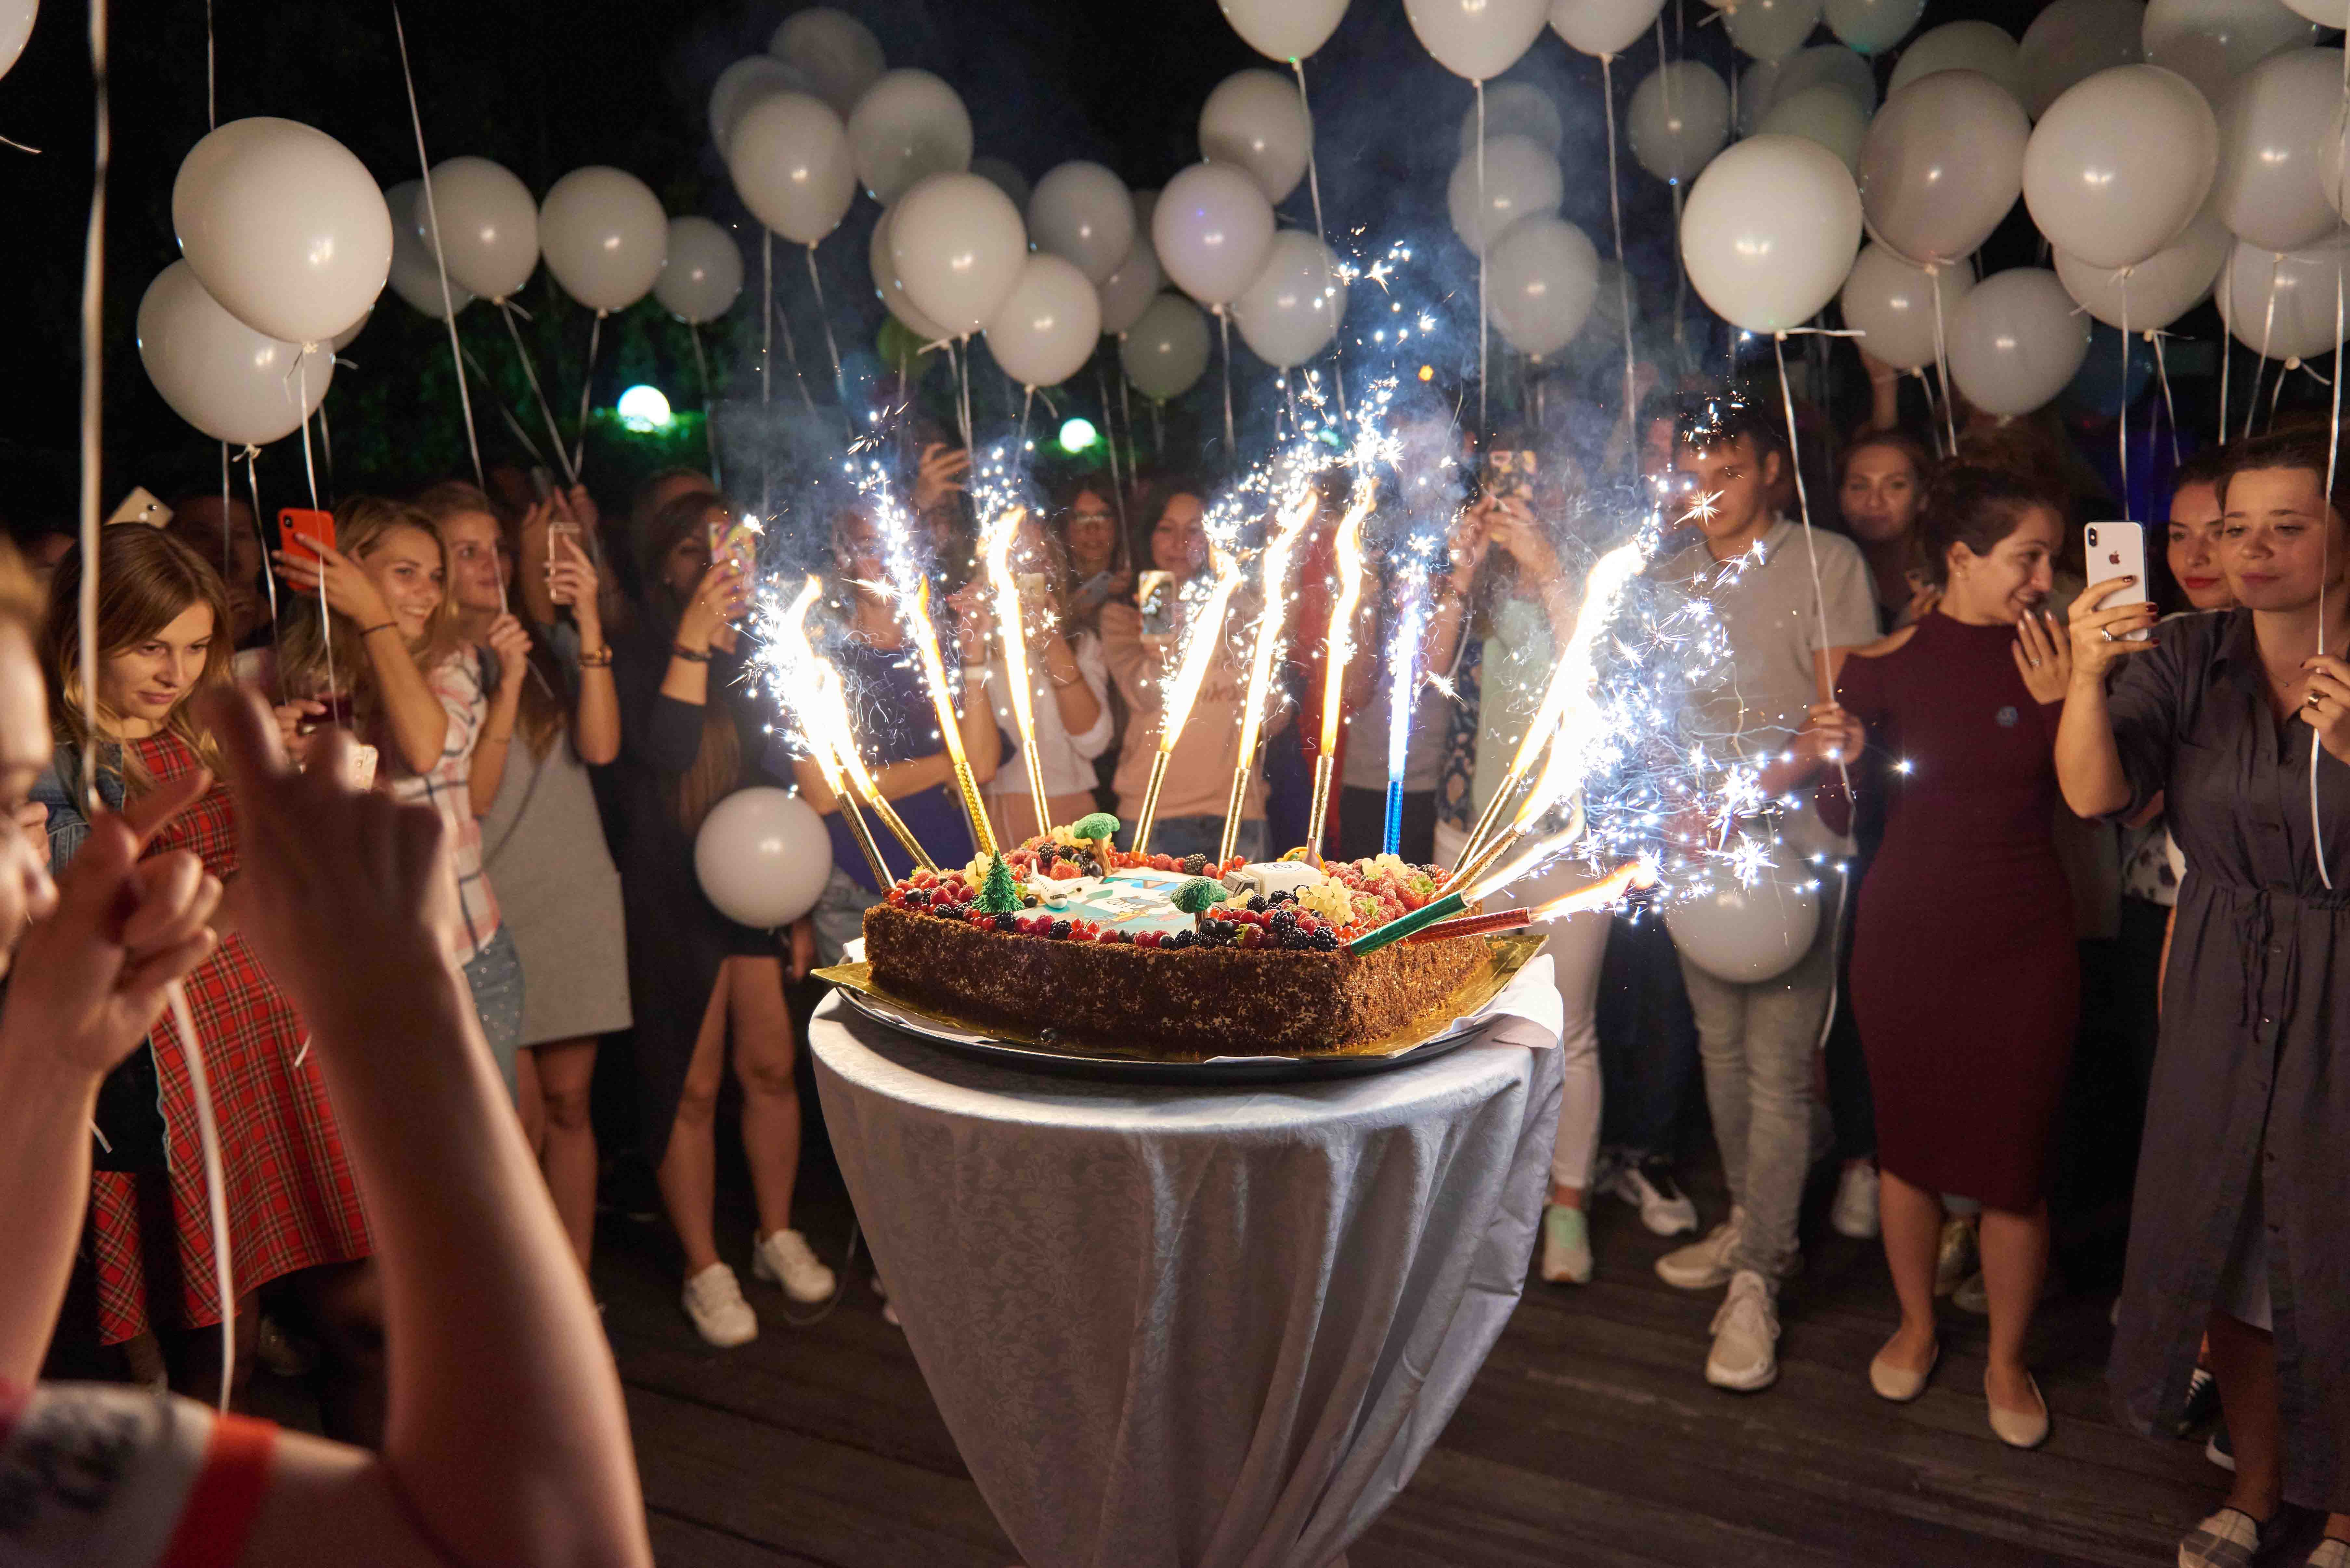 20 потрясающих способов, как отпраздновать день рождения. журнал joyday казахстан